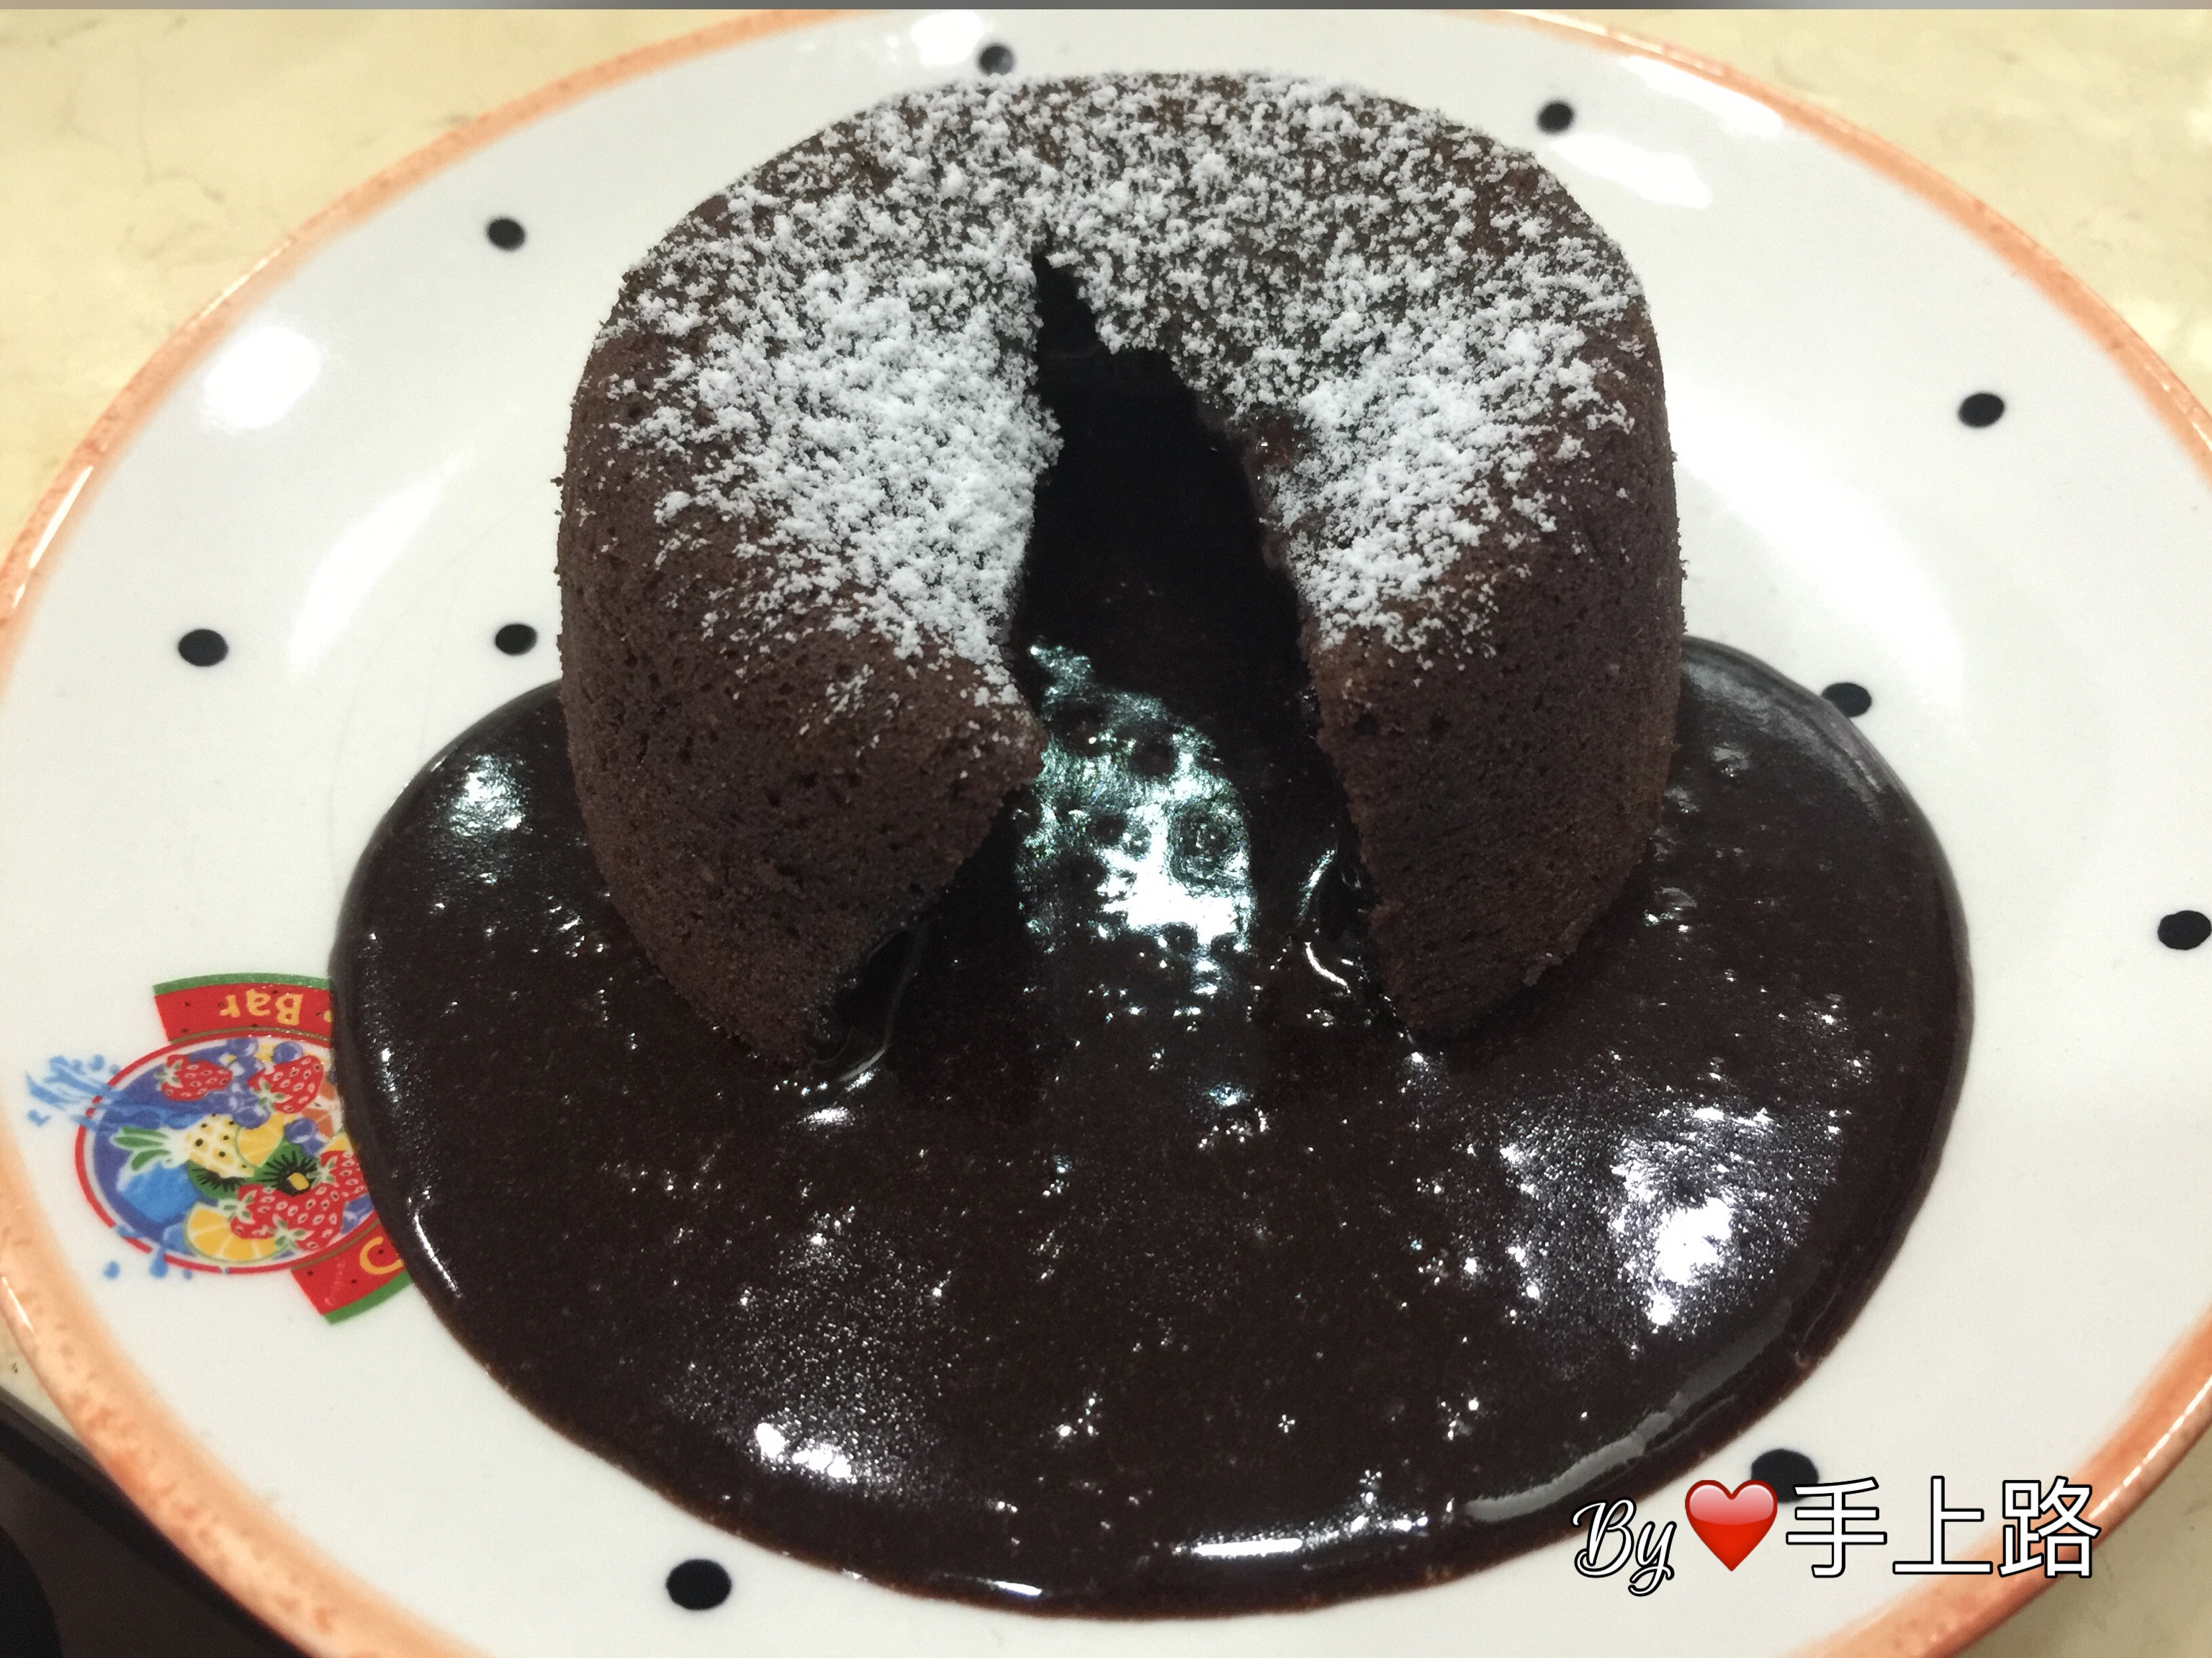 「萬無一失」巧克力熔岩蛋糕 by 蜜斯Ann的美食日記 - 愛料理